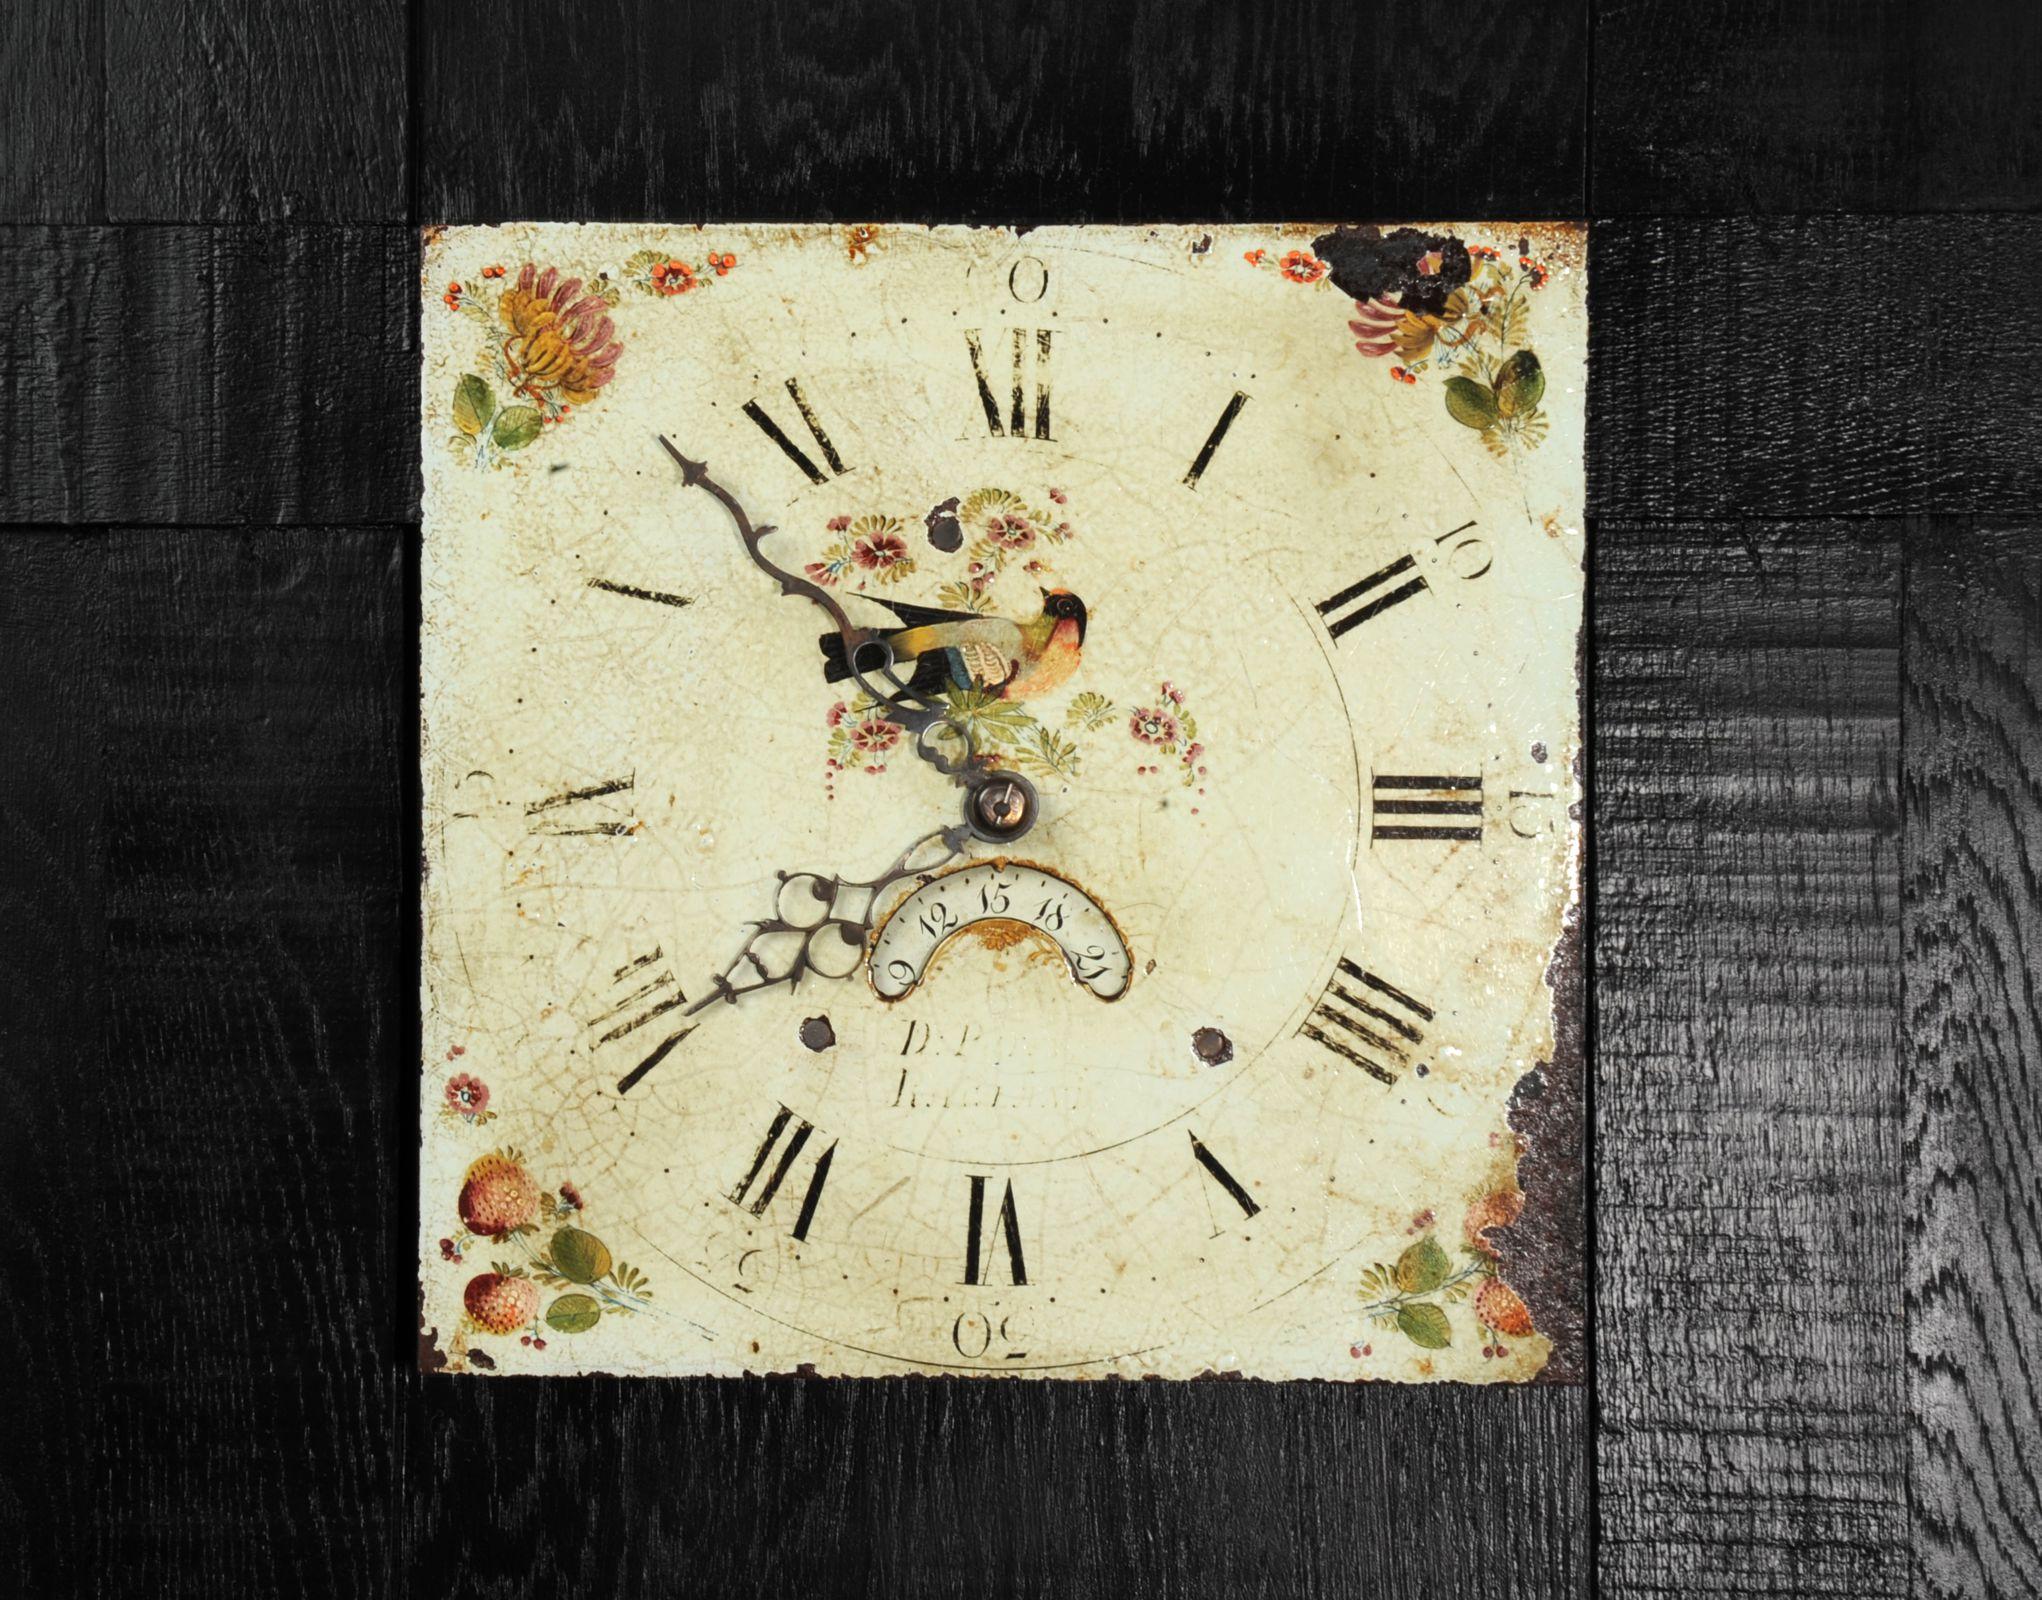 Un joli cadran d'horloge en fer ancien vers 1830 dans son émail d'origine, charmant décor d'oiseaux et de fleurs. Les coins sont ornés de fleurs et de fruits d'été peints de façon charmante. Avec des craquelures anciennes,  Les taches de rouille,